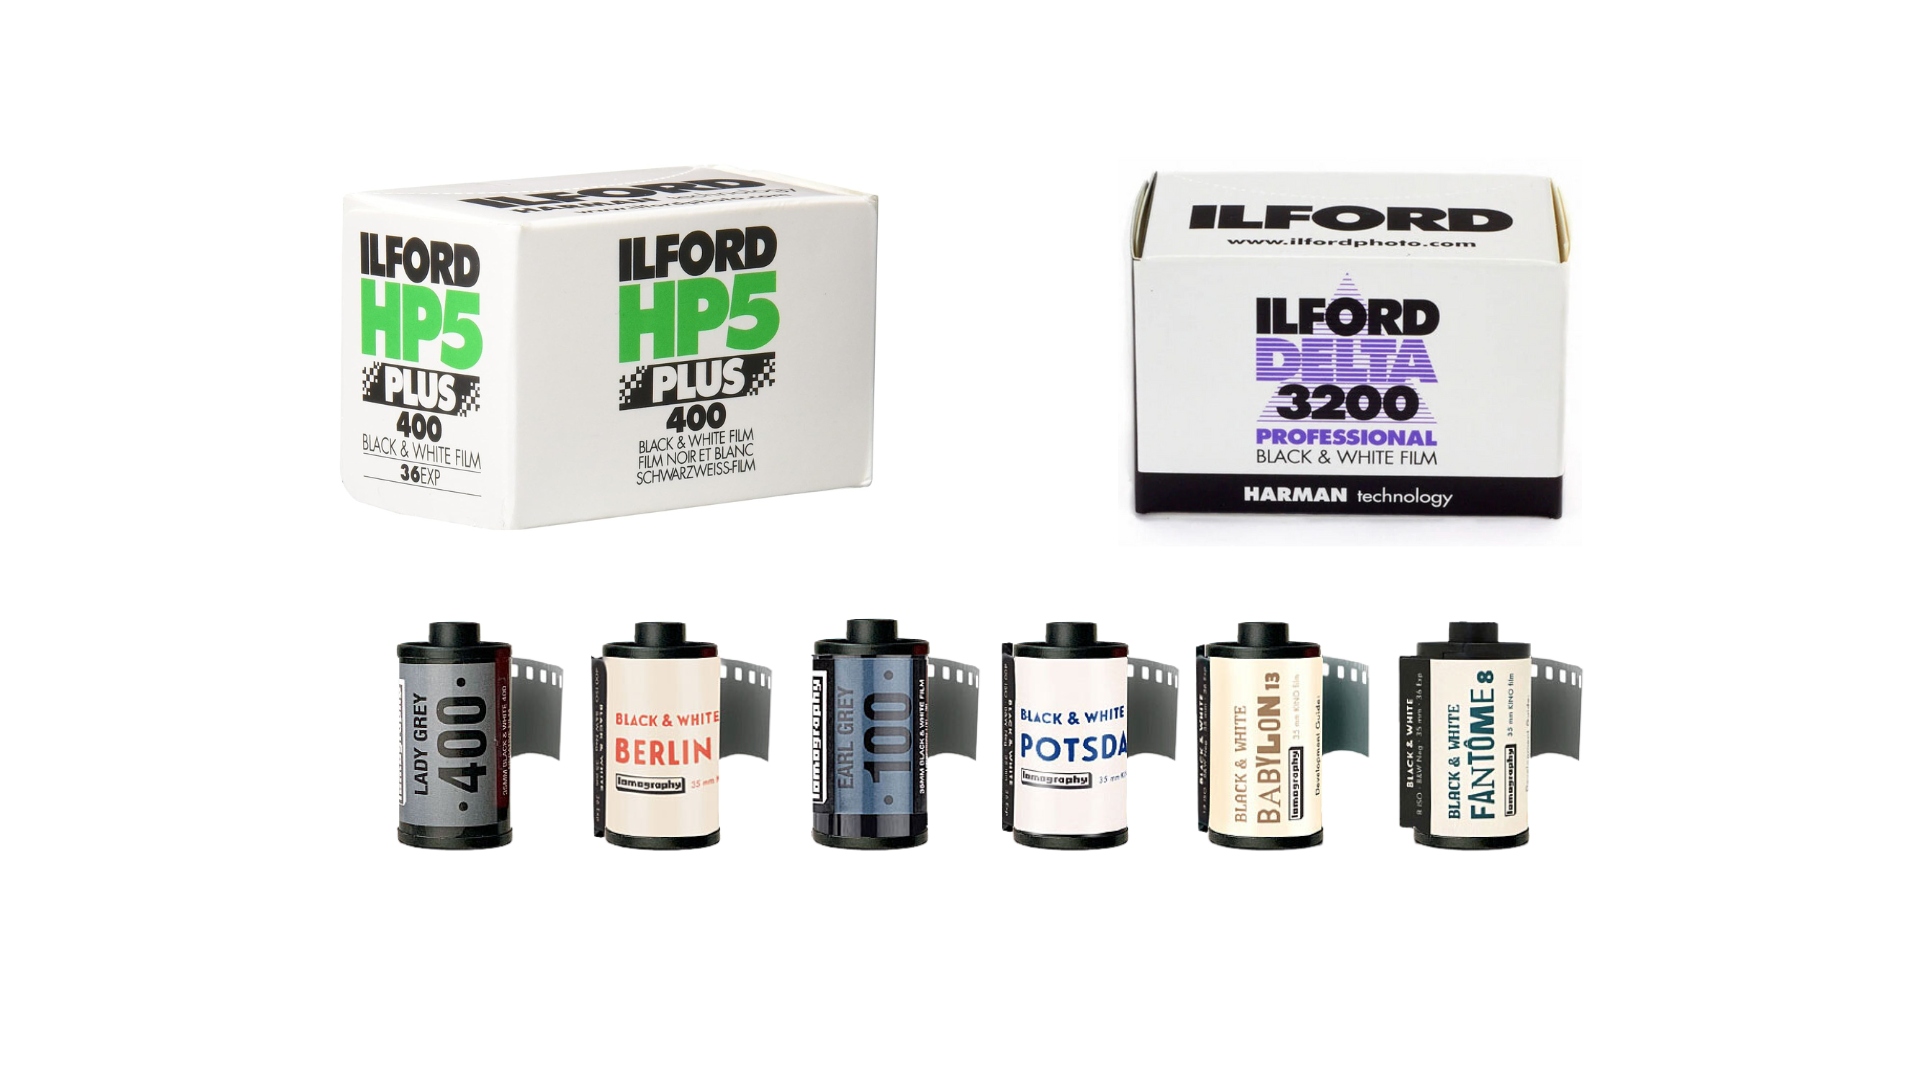 Flodor hps 300 film pack.